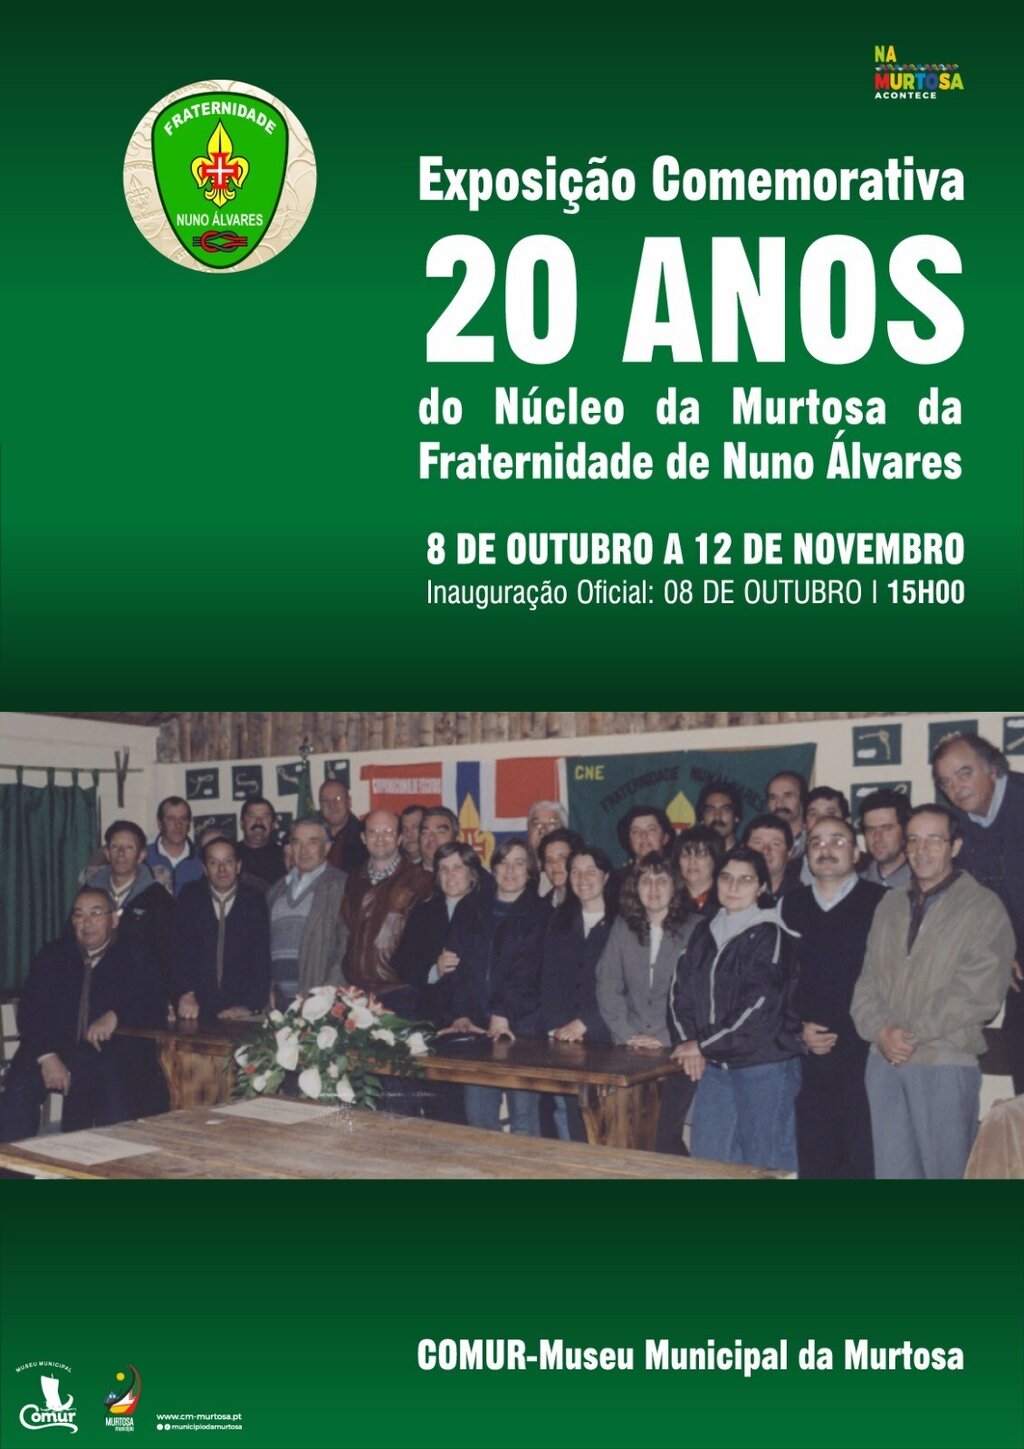 Exposição Comemorativa dos 20 ANOS do Núcleo da Murtosa da Fraternidade de Nuno Álvares